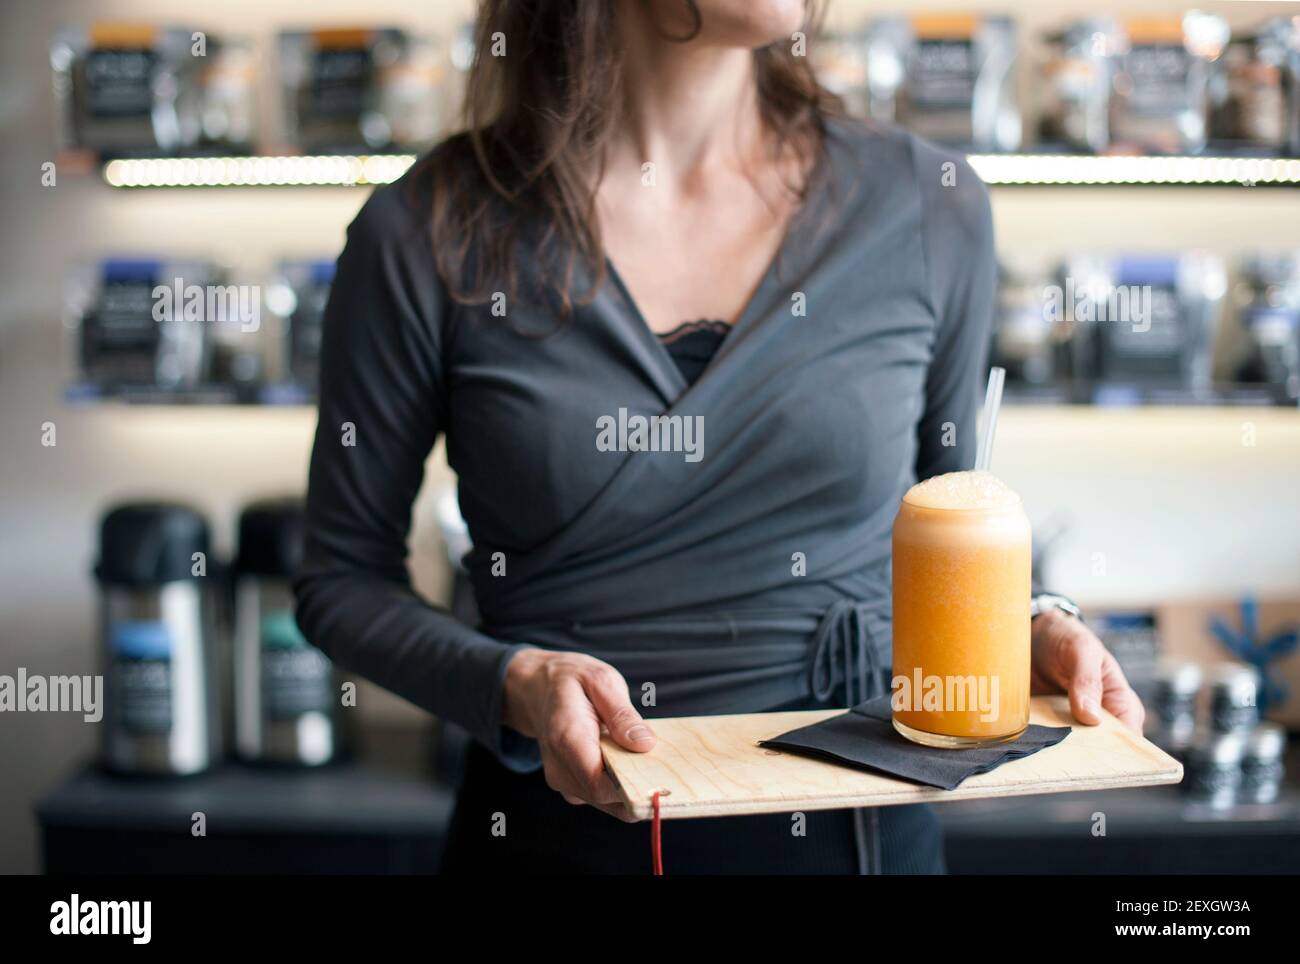 Primer plano de la camarera de servicio, las manos sosteniendo un vaso de jugo de naranja en la bandeja concepto de estilo de vida saludable Foto de stock